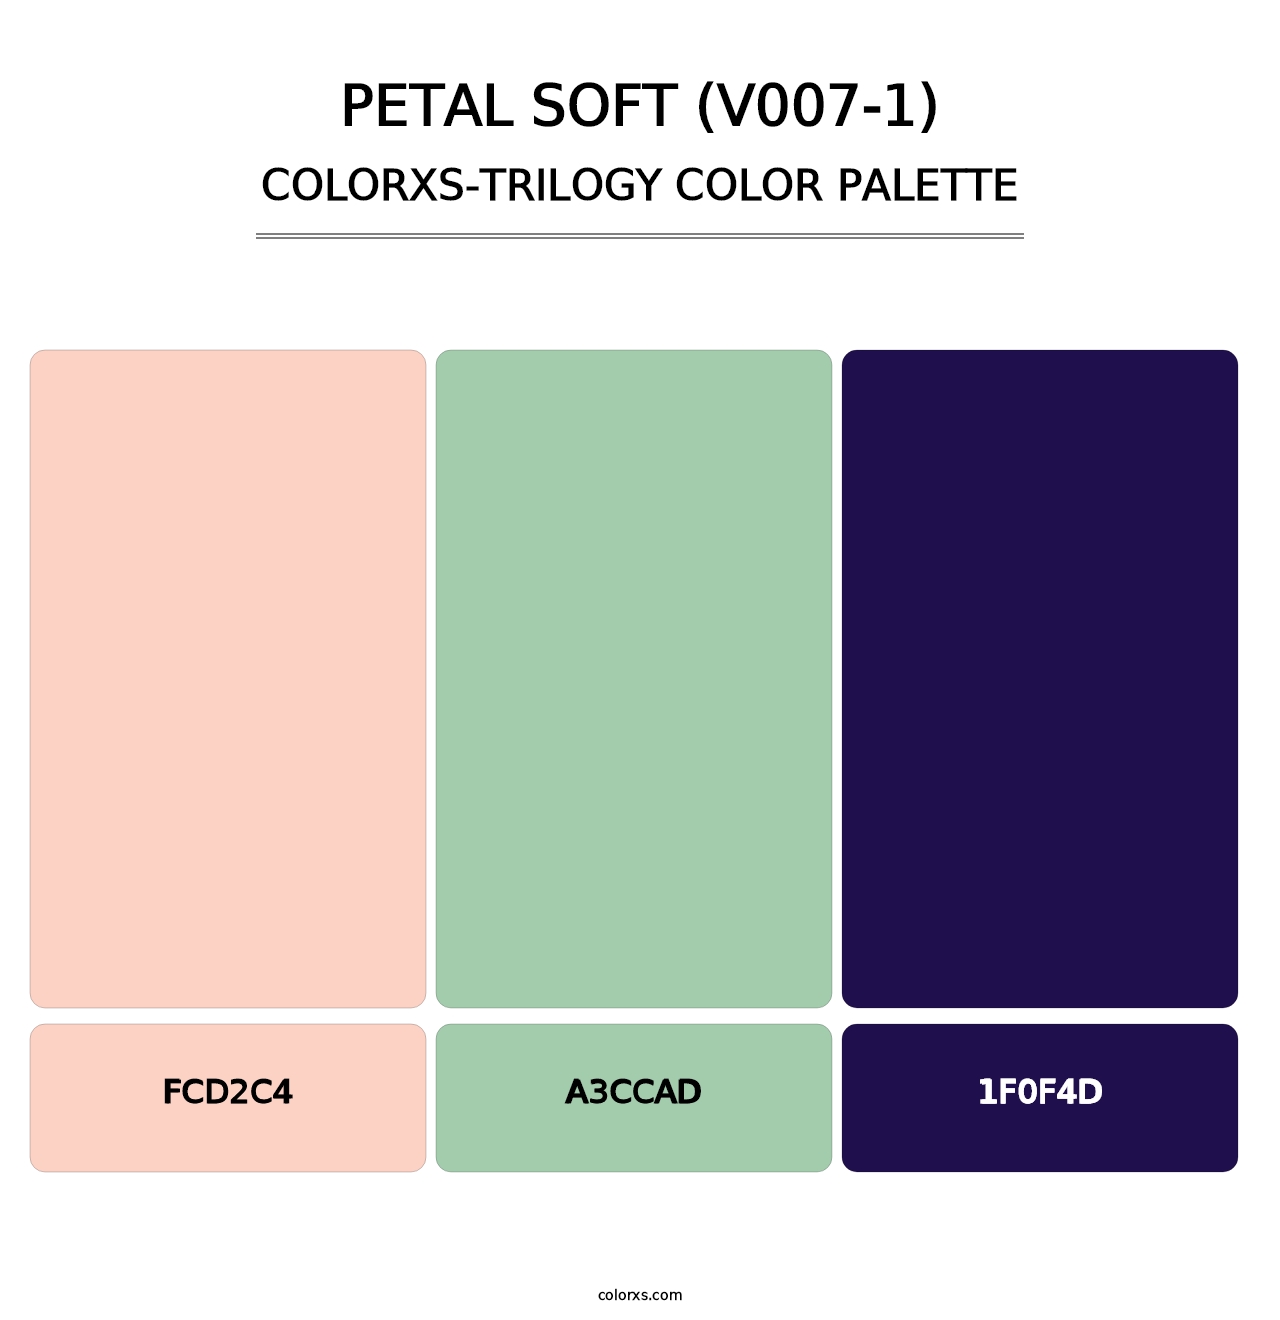 Petal Soft (V007-1) - Colorxs Trilogy Palette